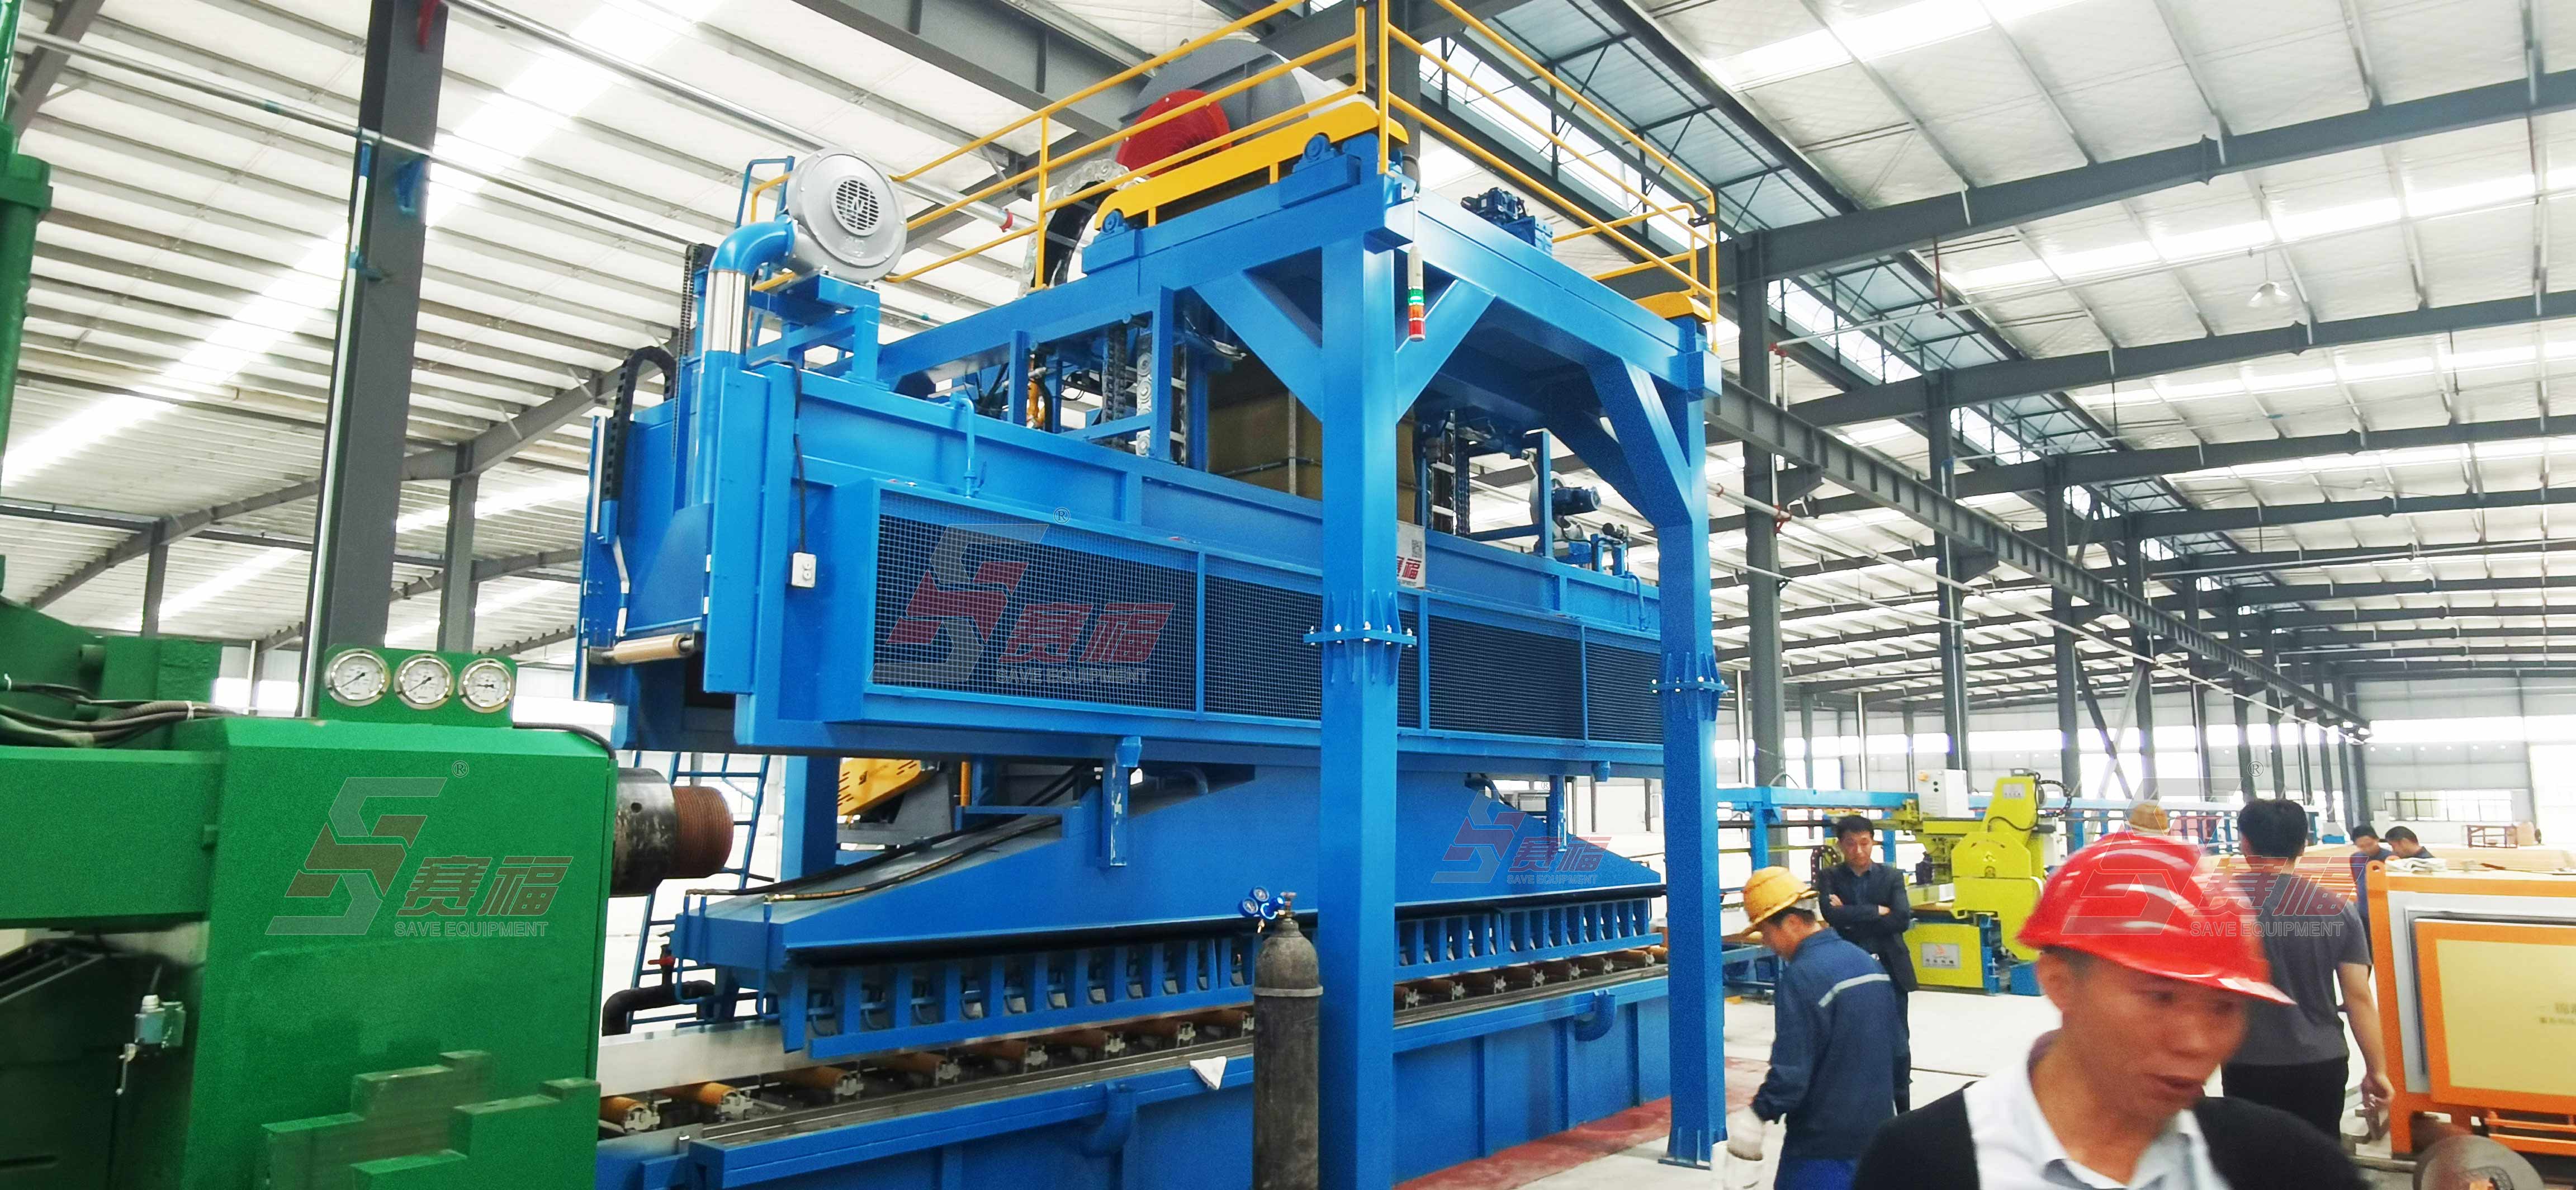 广东科优精密机械制造有限公司2000吨在线淬火设备投入生产。